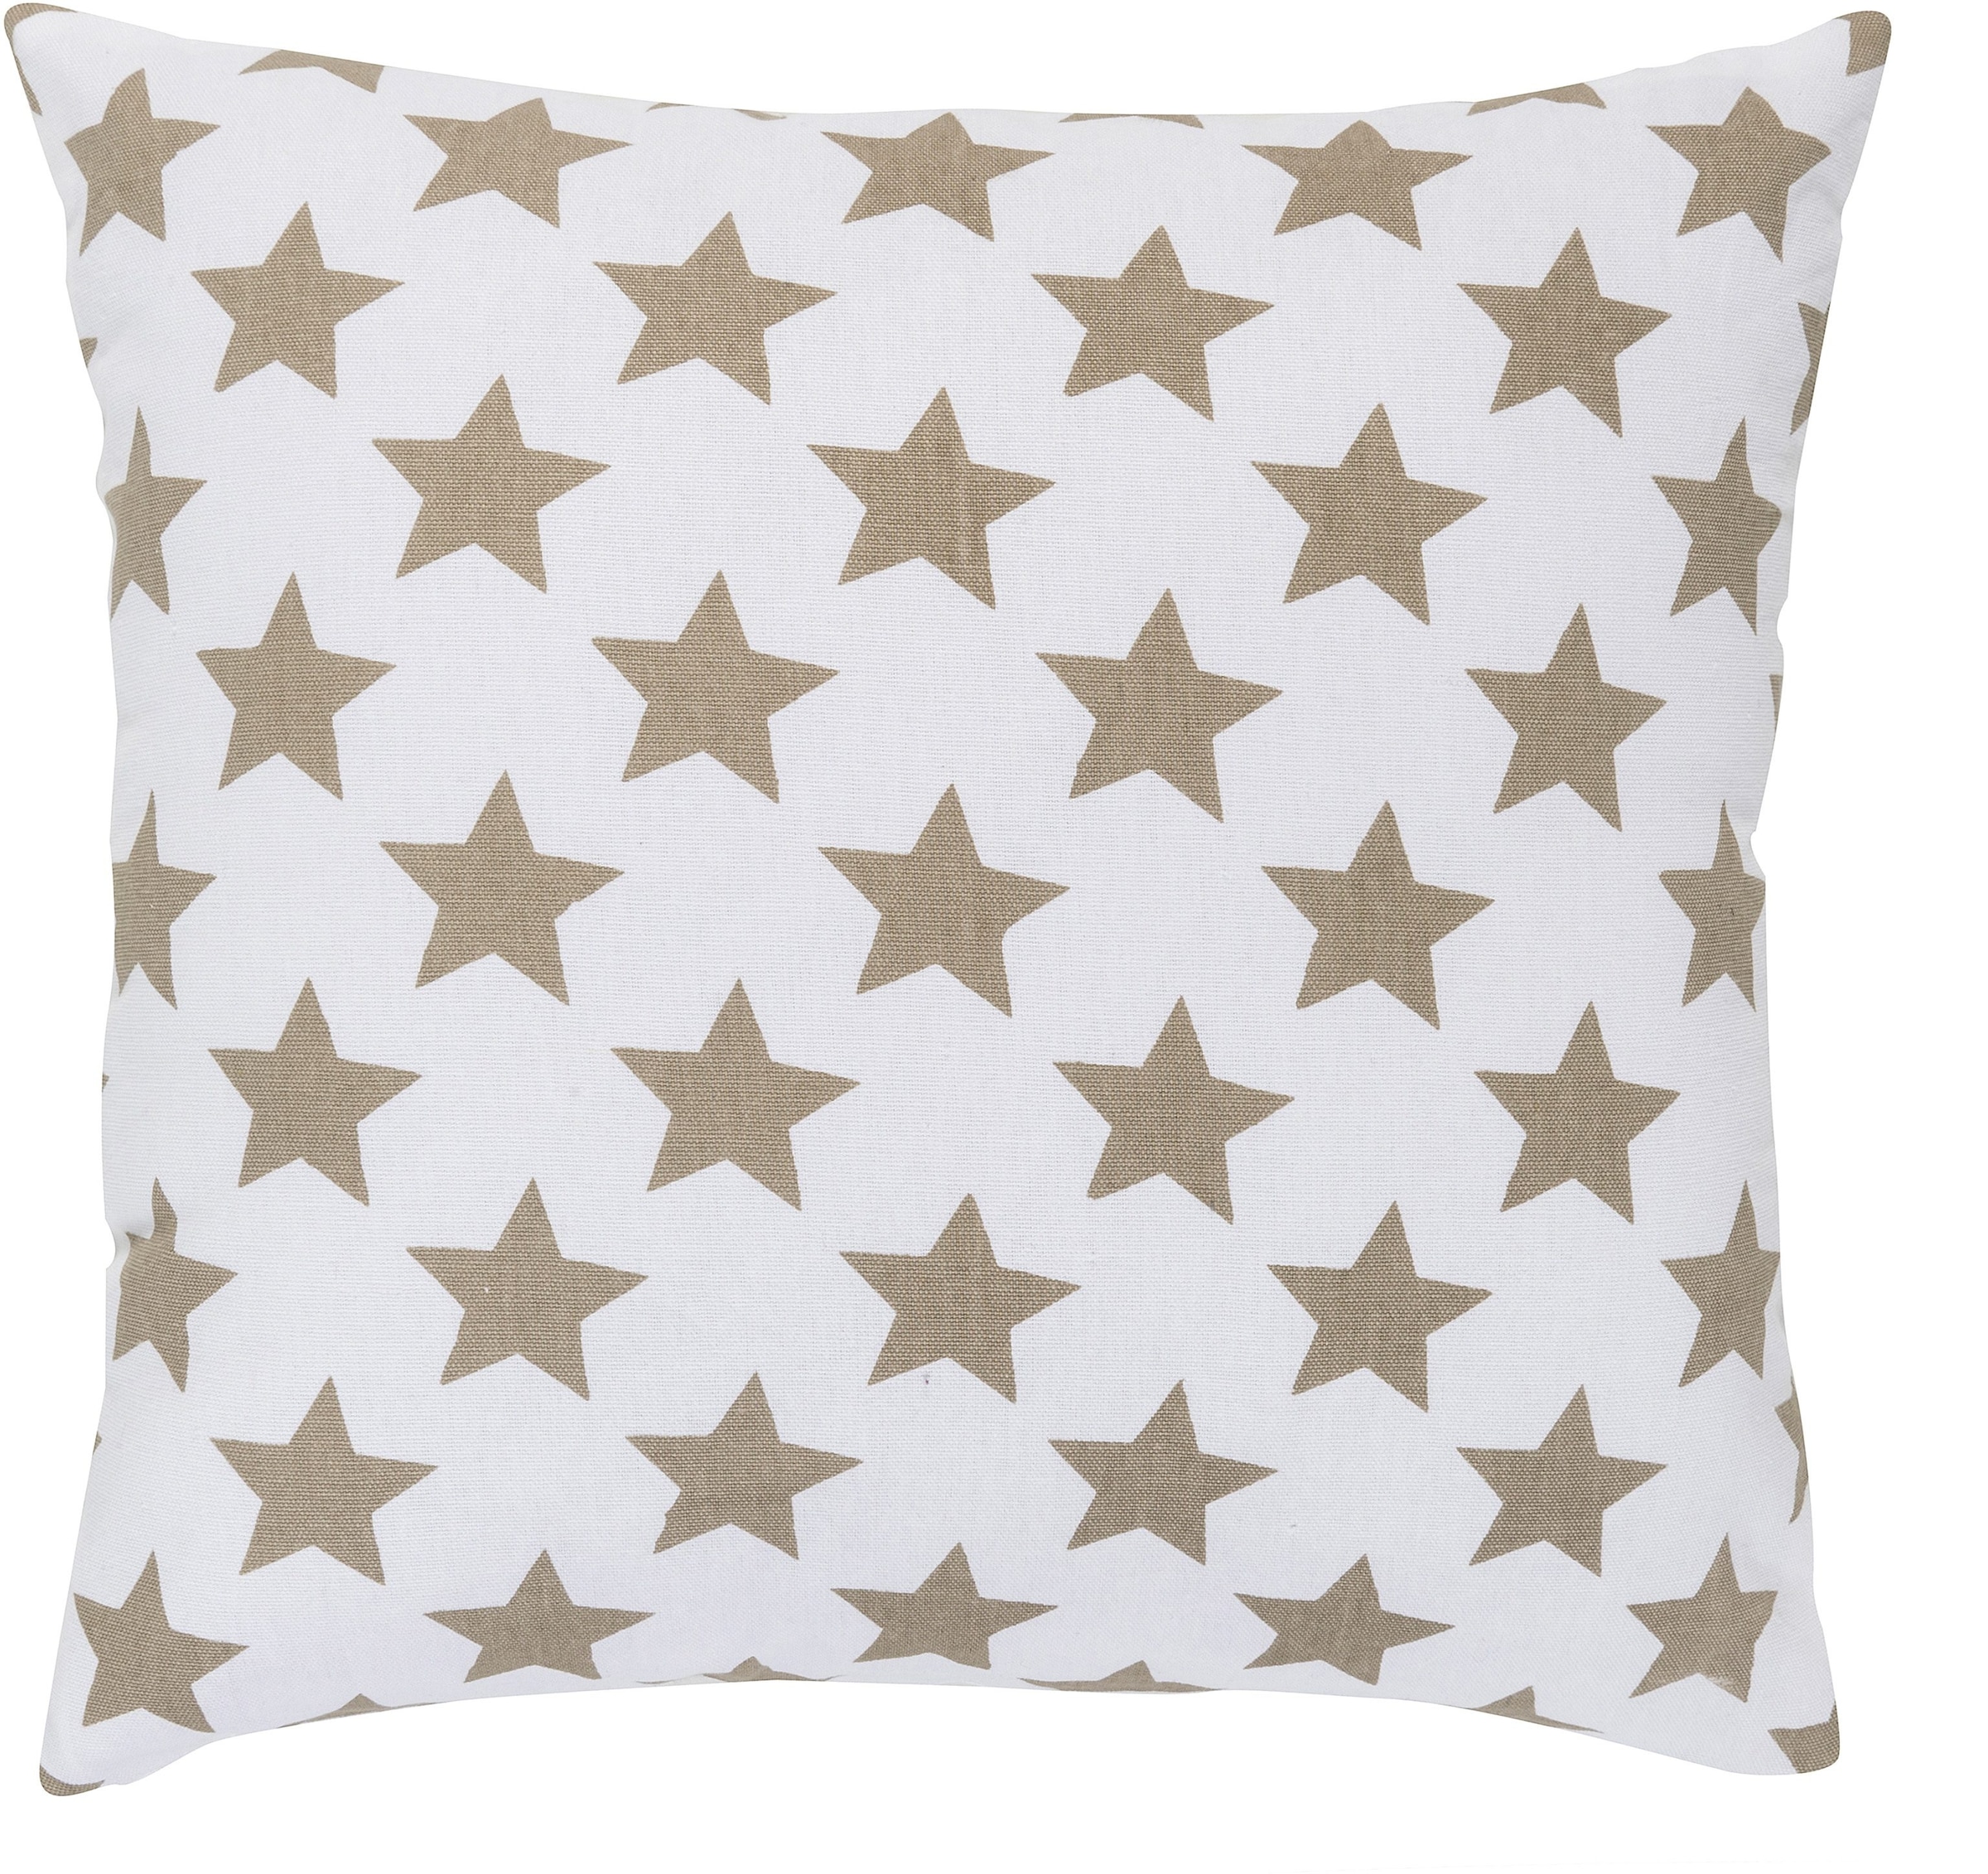 ELBERSDRUCKE Dekokissen »Stars allover«, Kissenhülle mit Polyesterfüllung mit trendigen Stern-Motiven, 45x45 cm